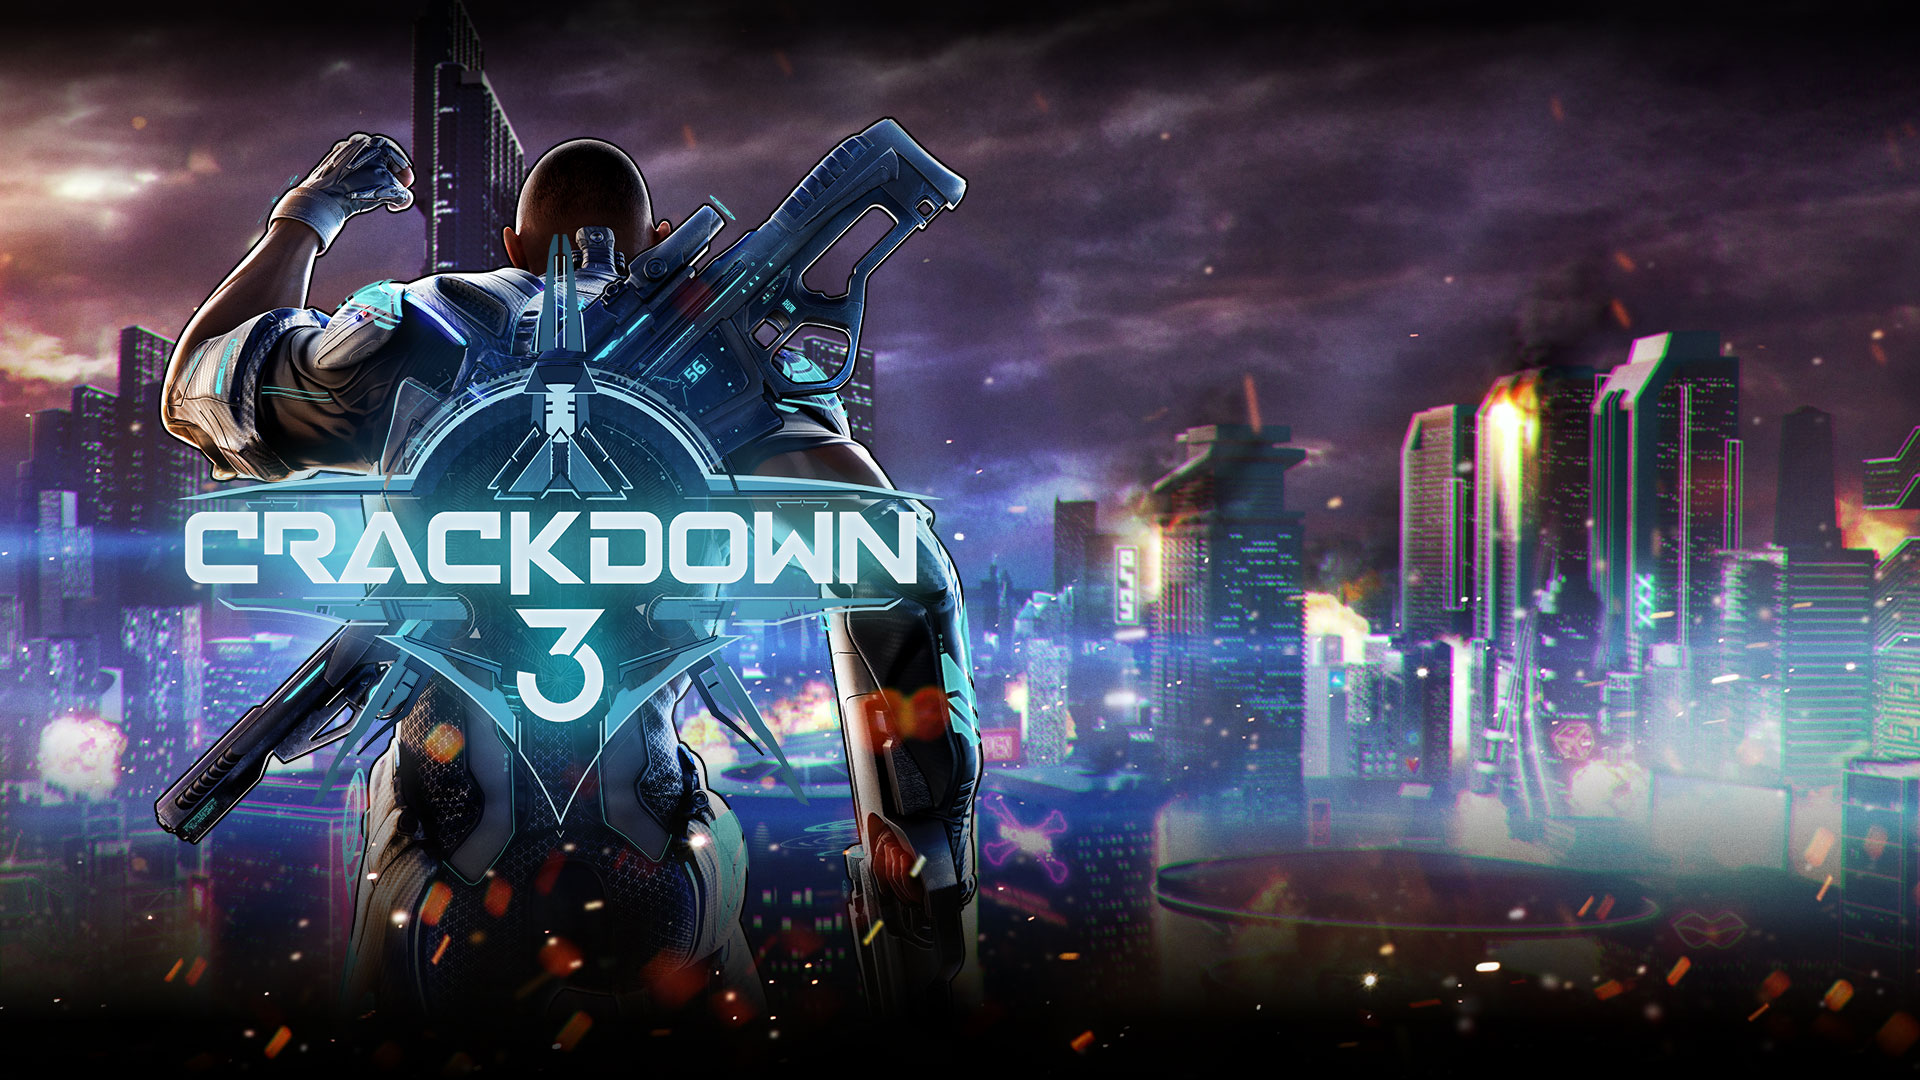 Crackdown 3, comandante Jaxon elevando seu punho sobre uma cena urbana.